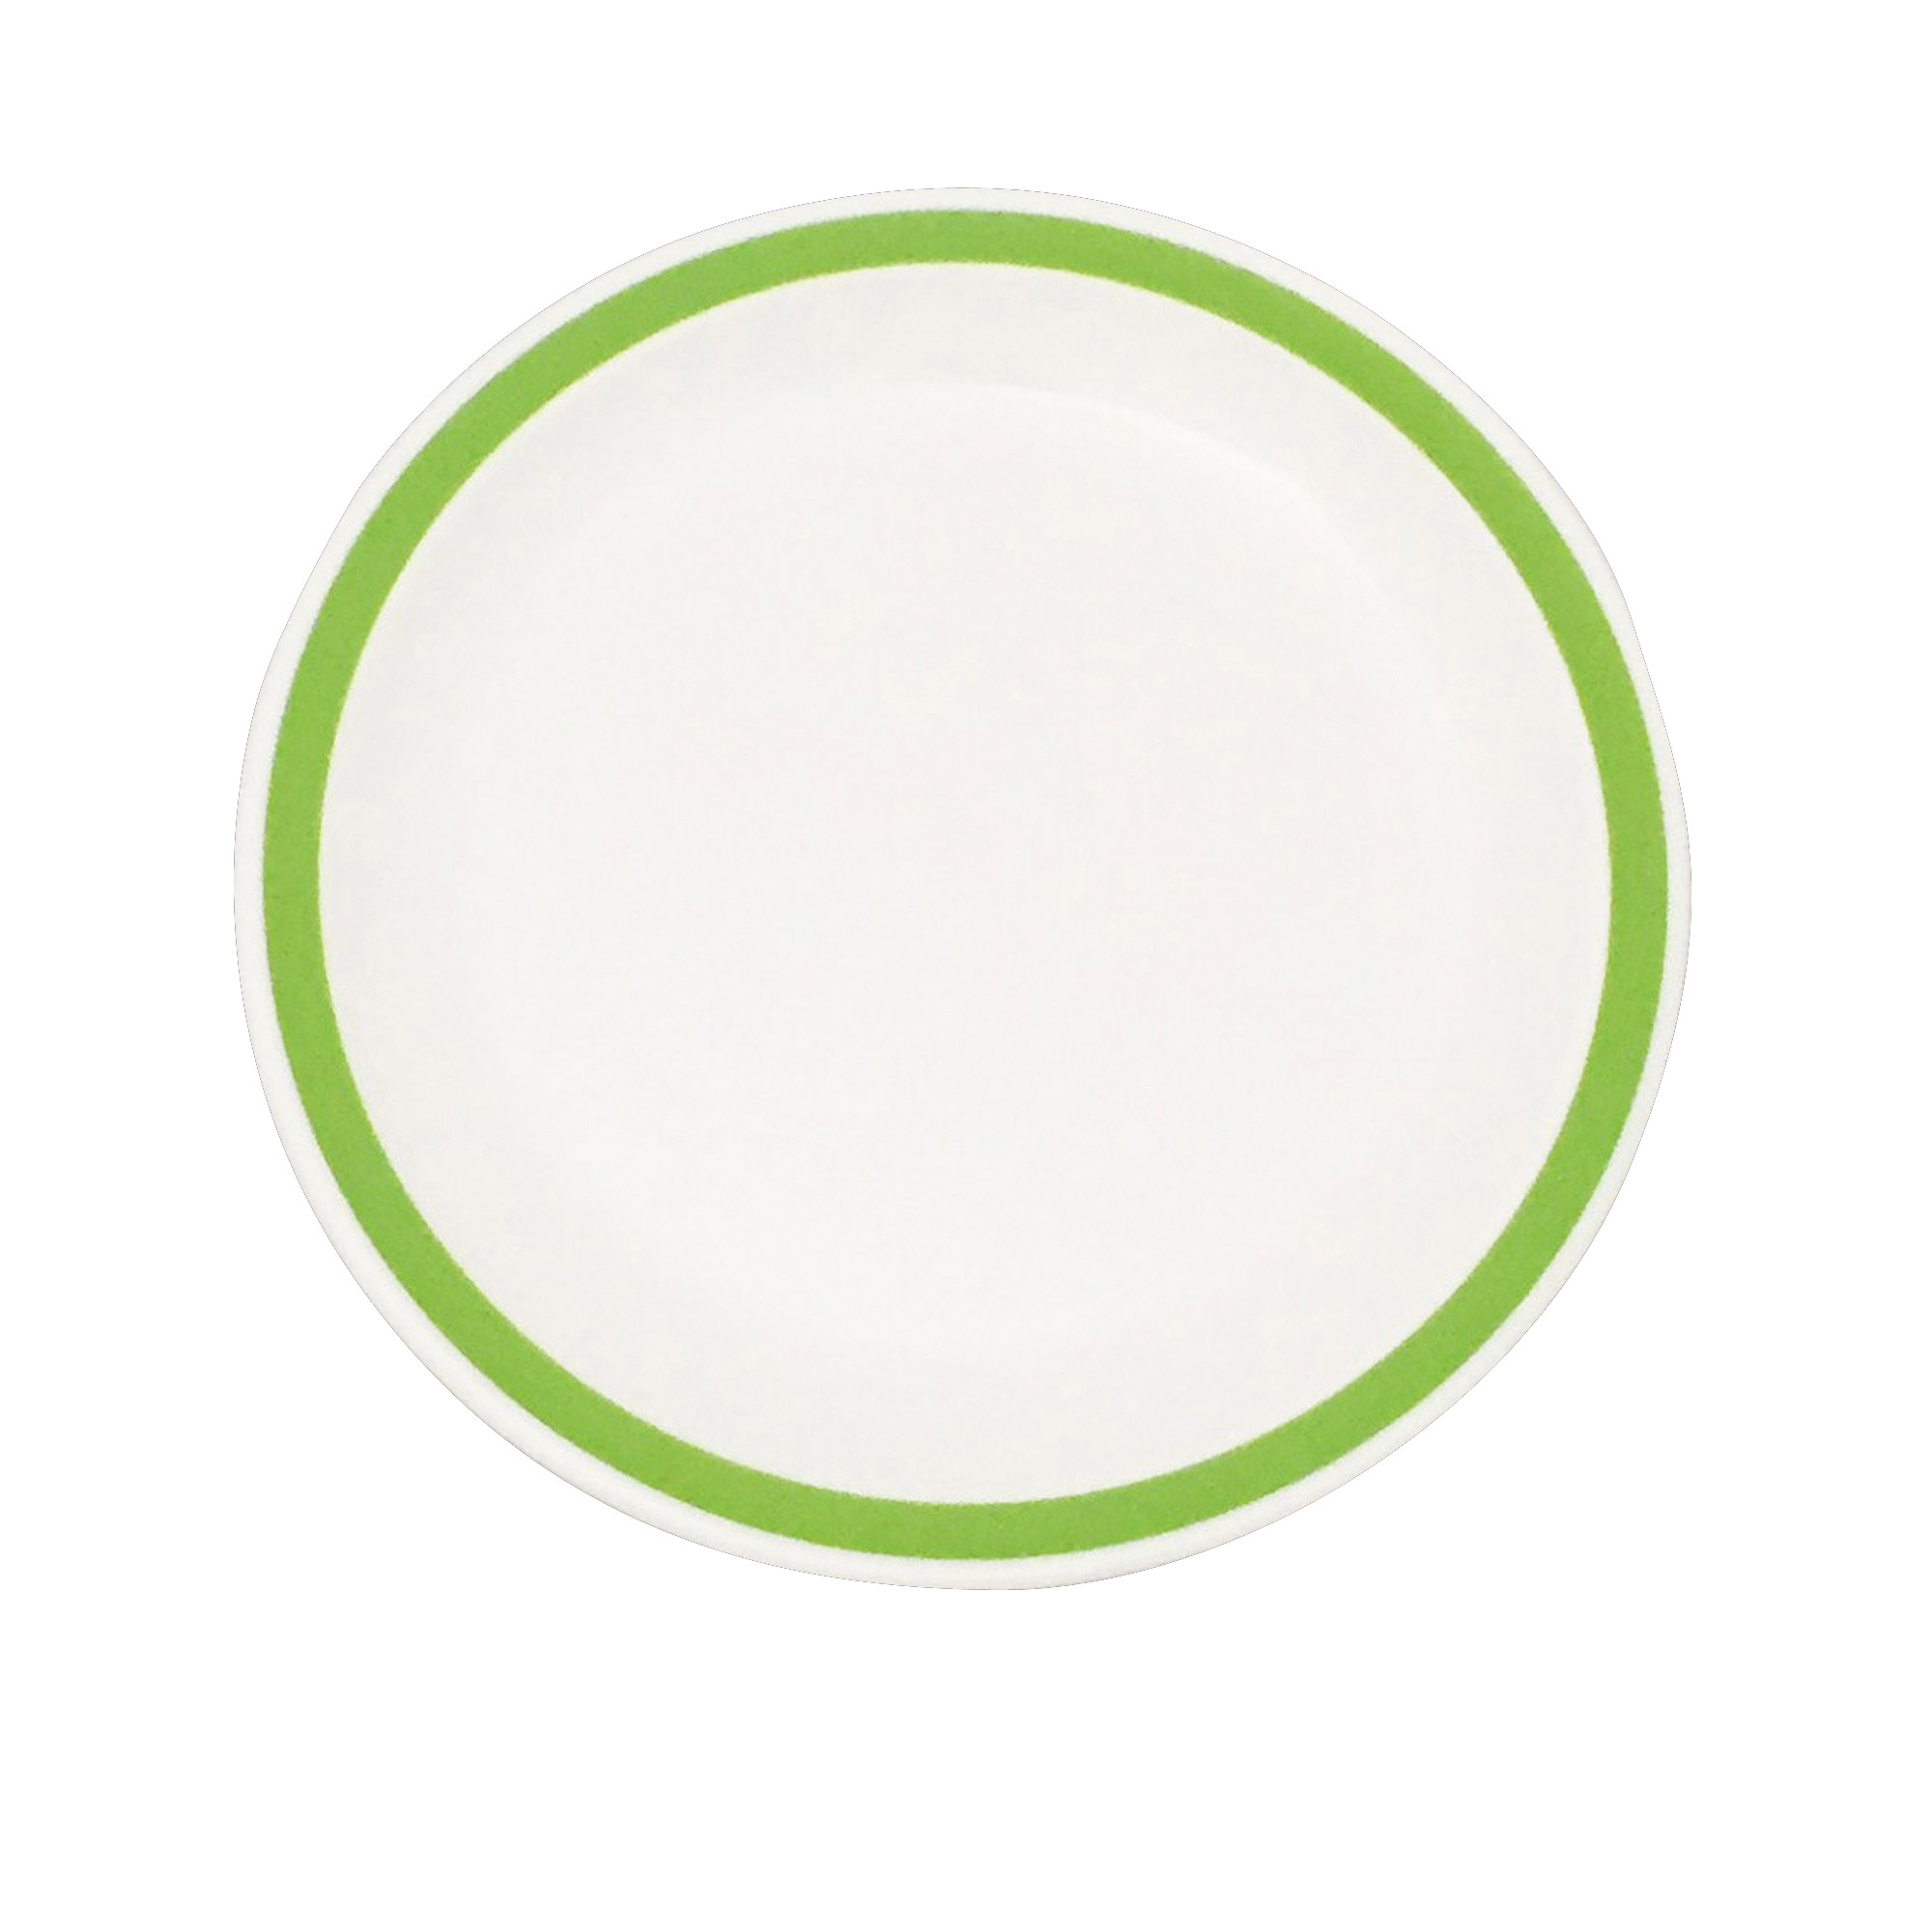 Polycarb White Dinner Plate Narrow Green Rim 23cm - Each